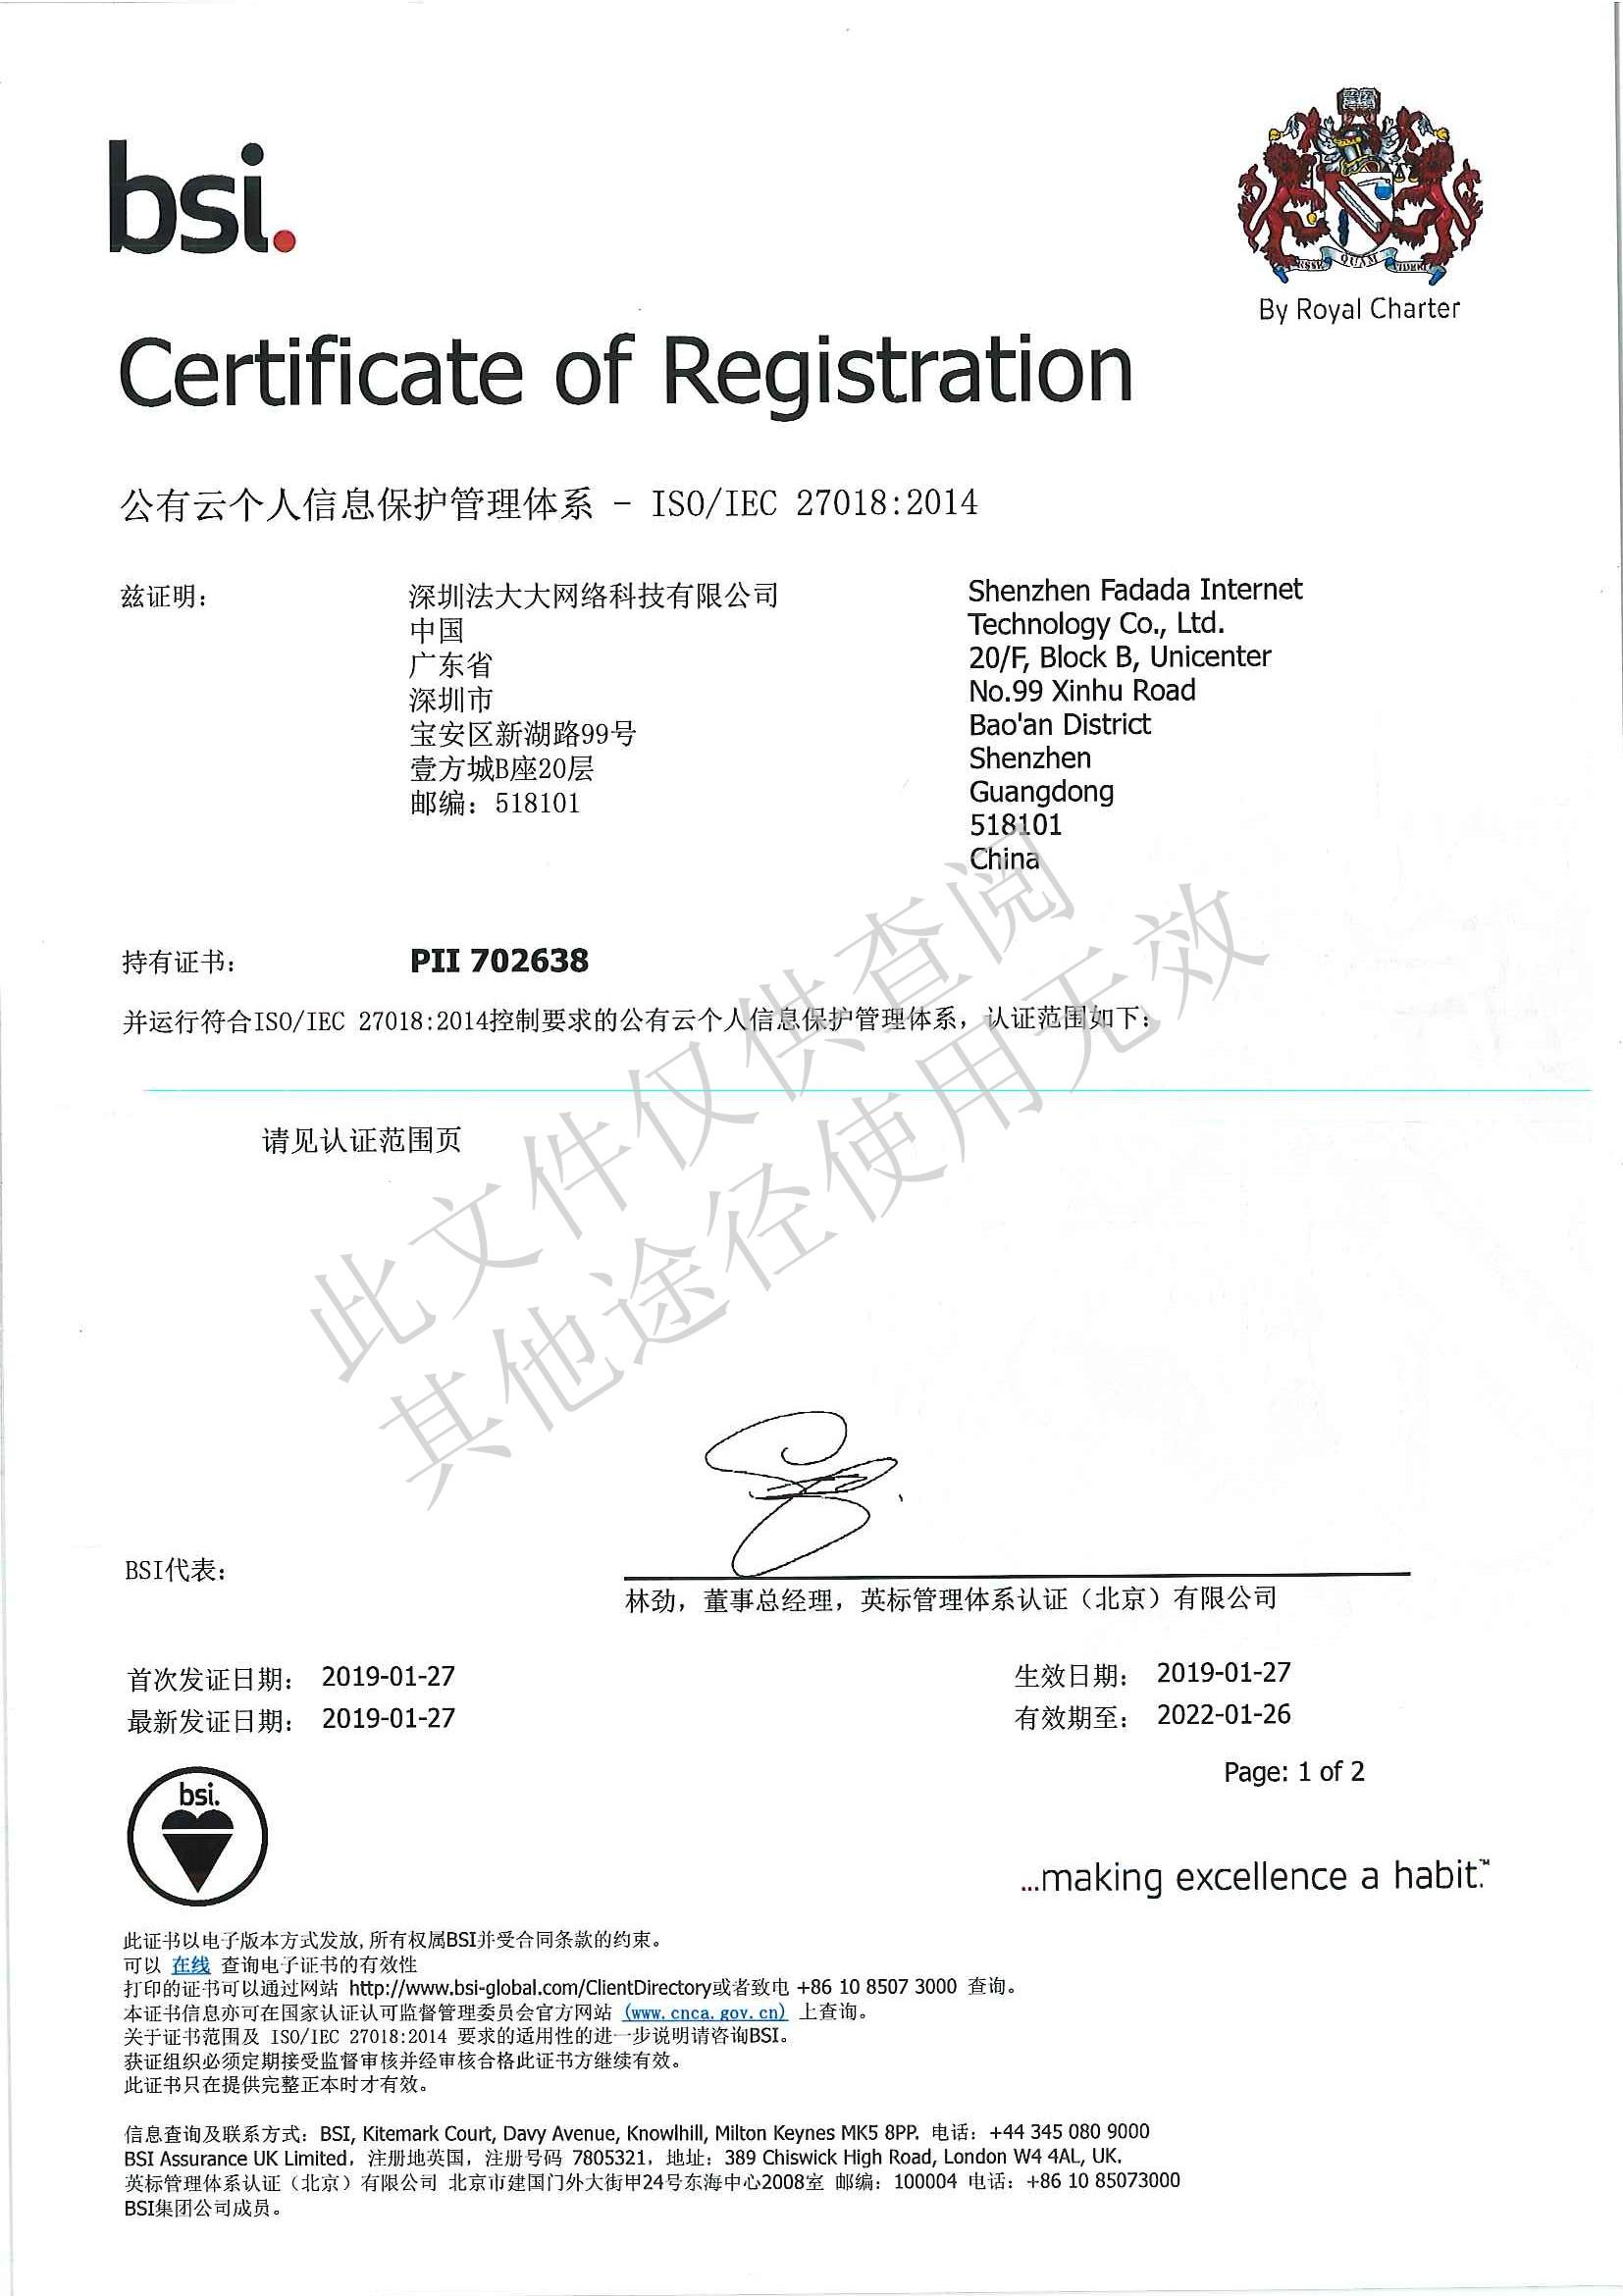 法大大ISO27018认证